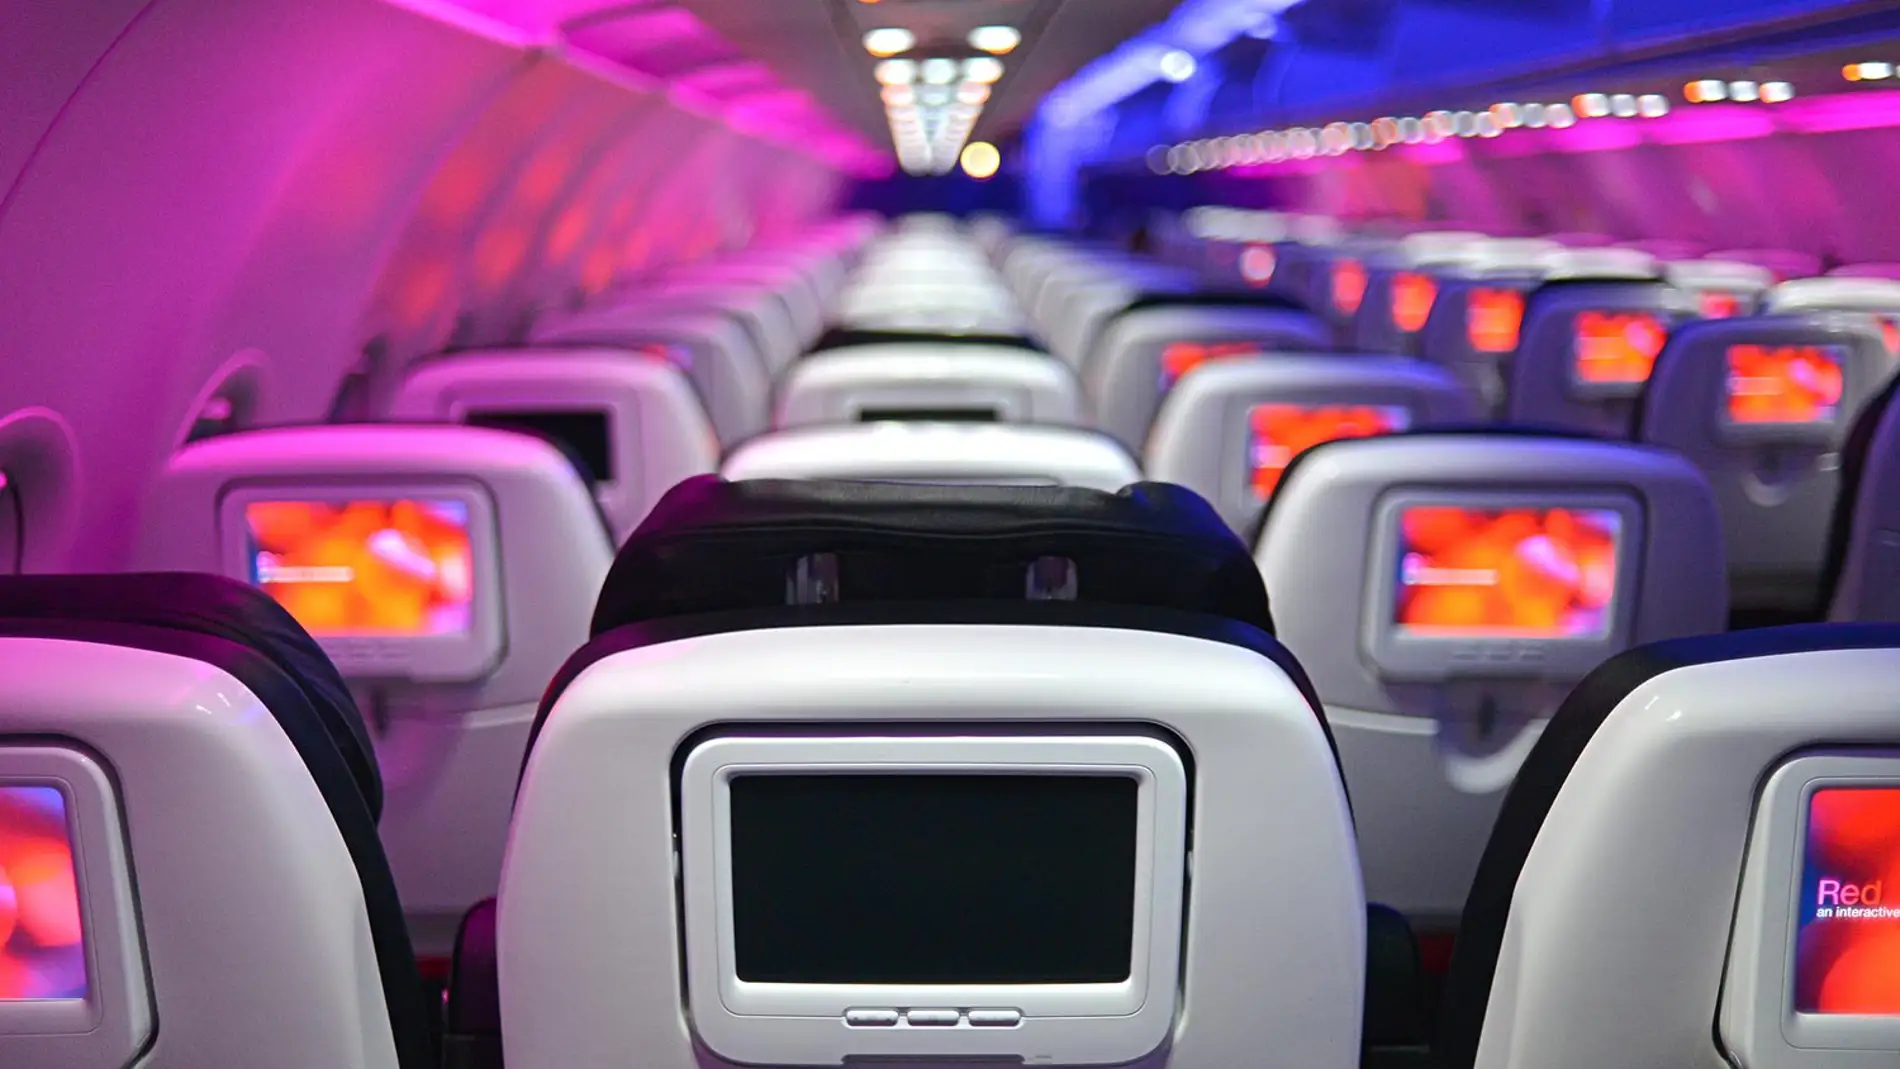 Las aerolíneas podrían eliminar las pantallas en sus asientos